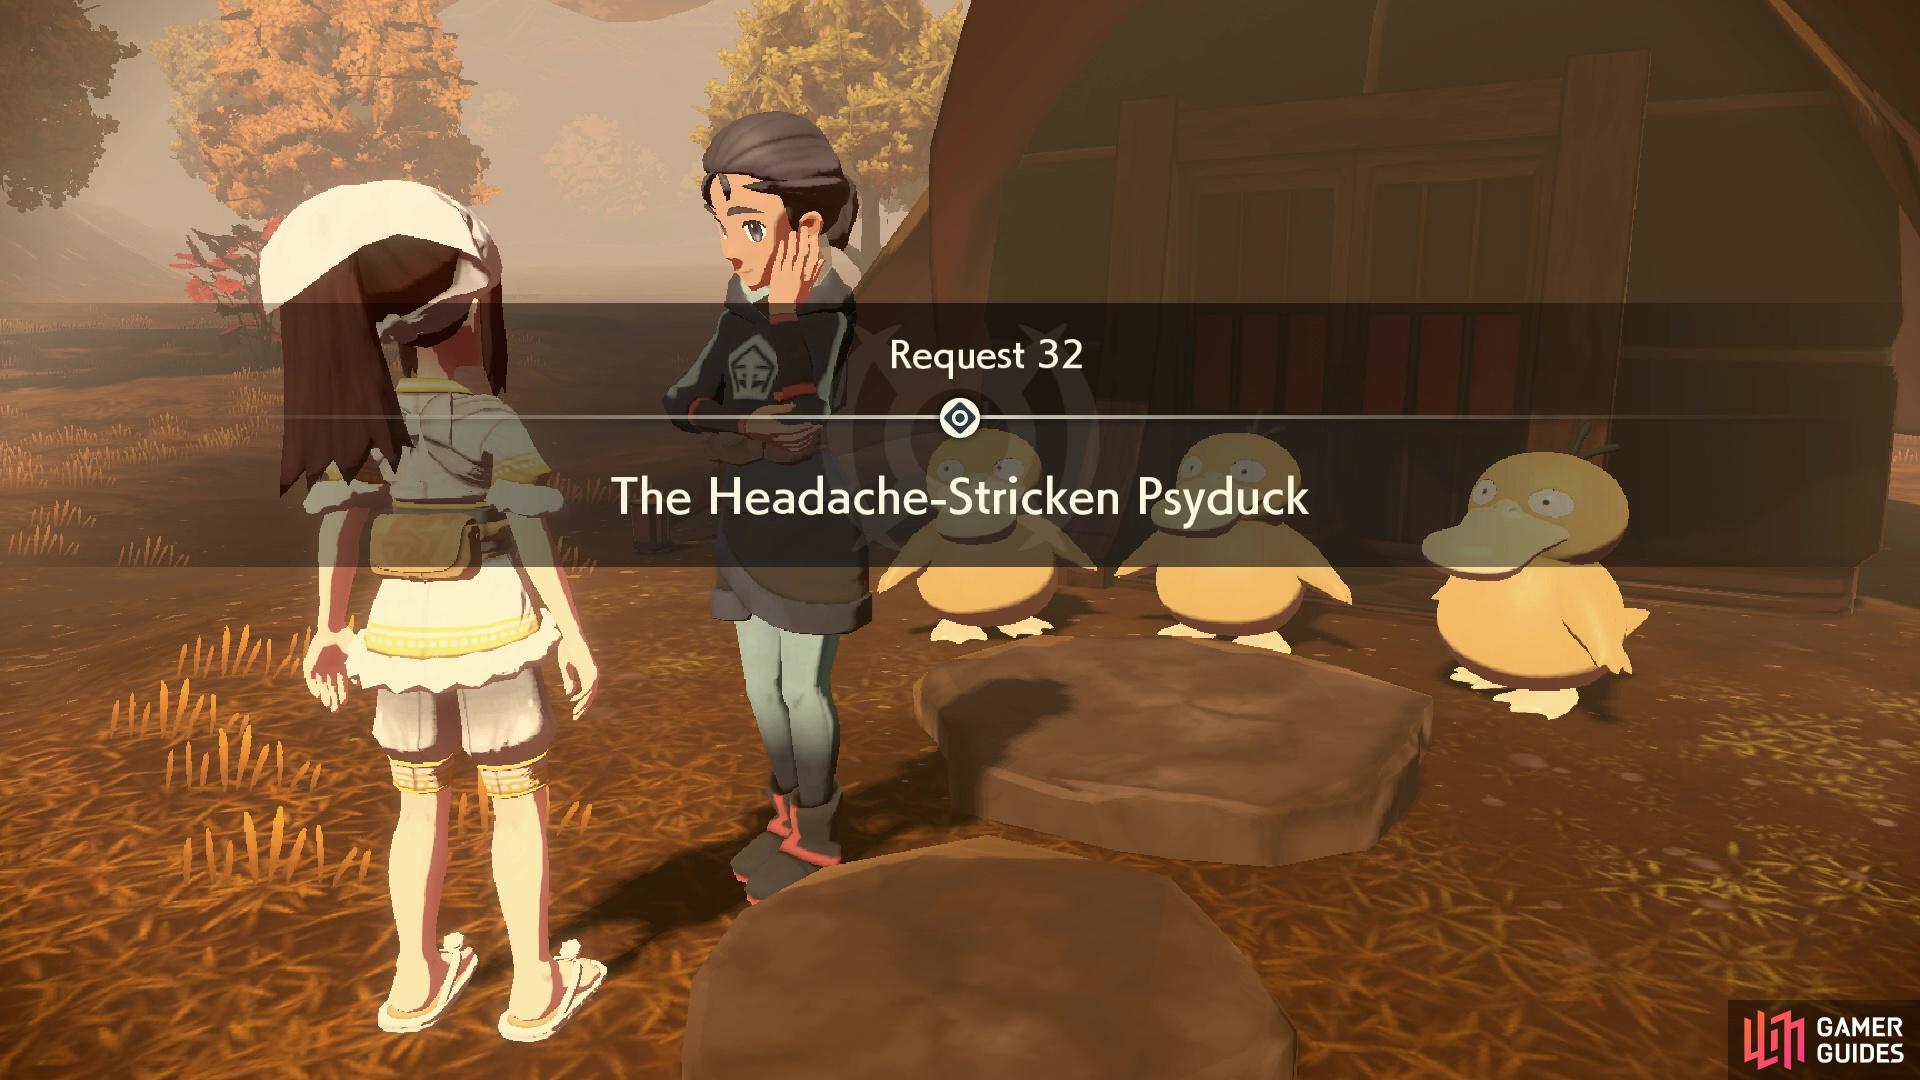 Request 32: The Headache-Stricken Psyduck.